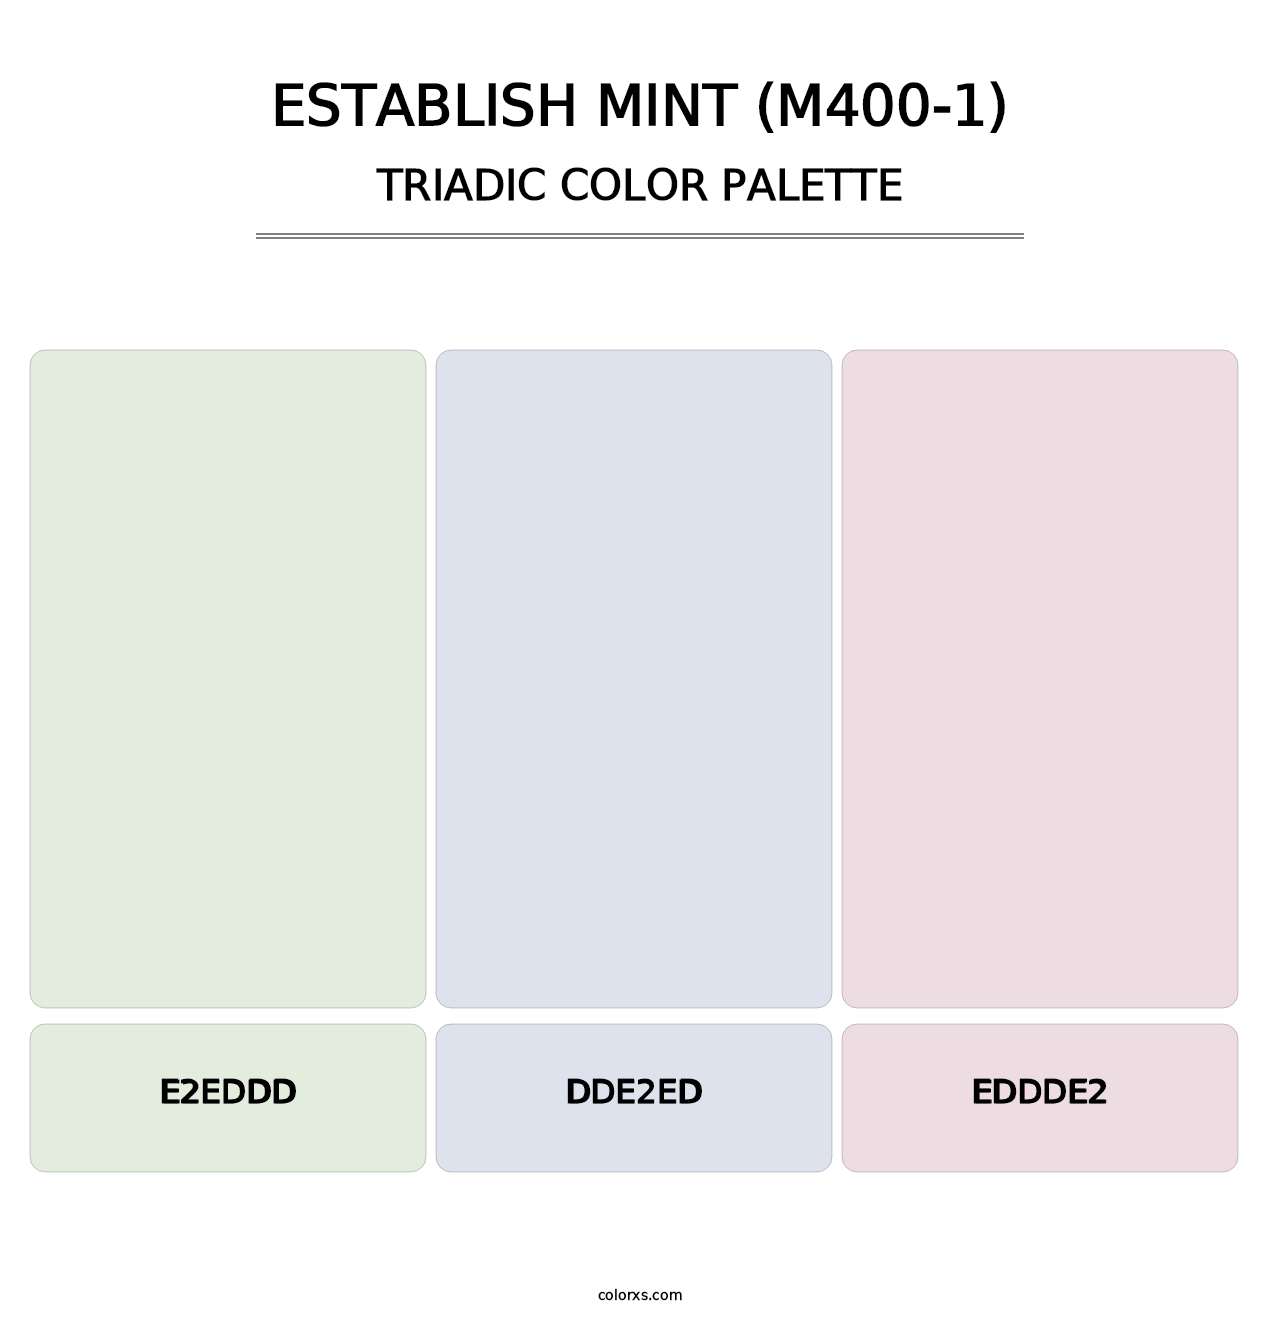 Establish Mint (M400-1) - Triadic Color Palette